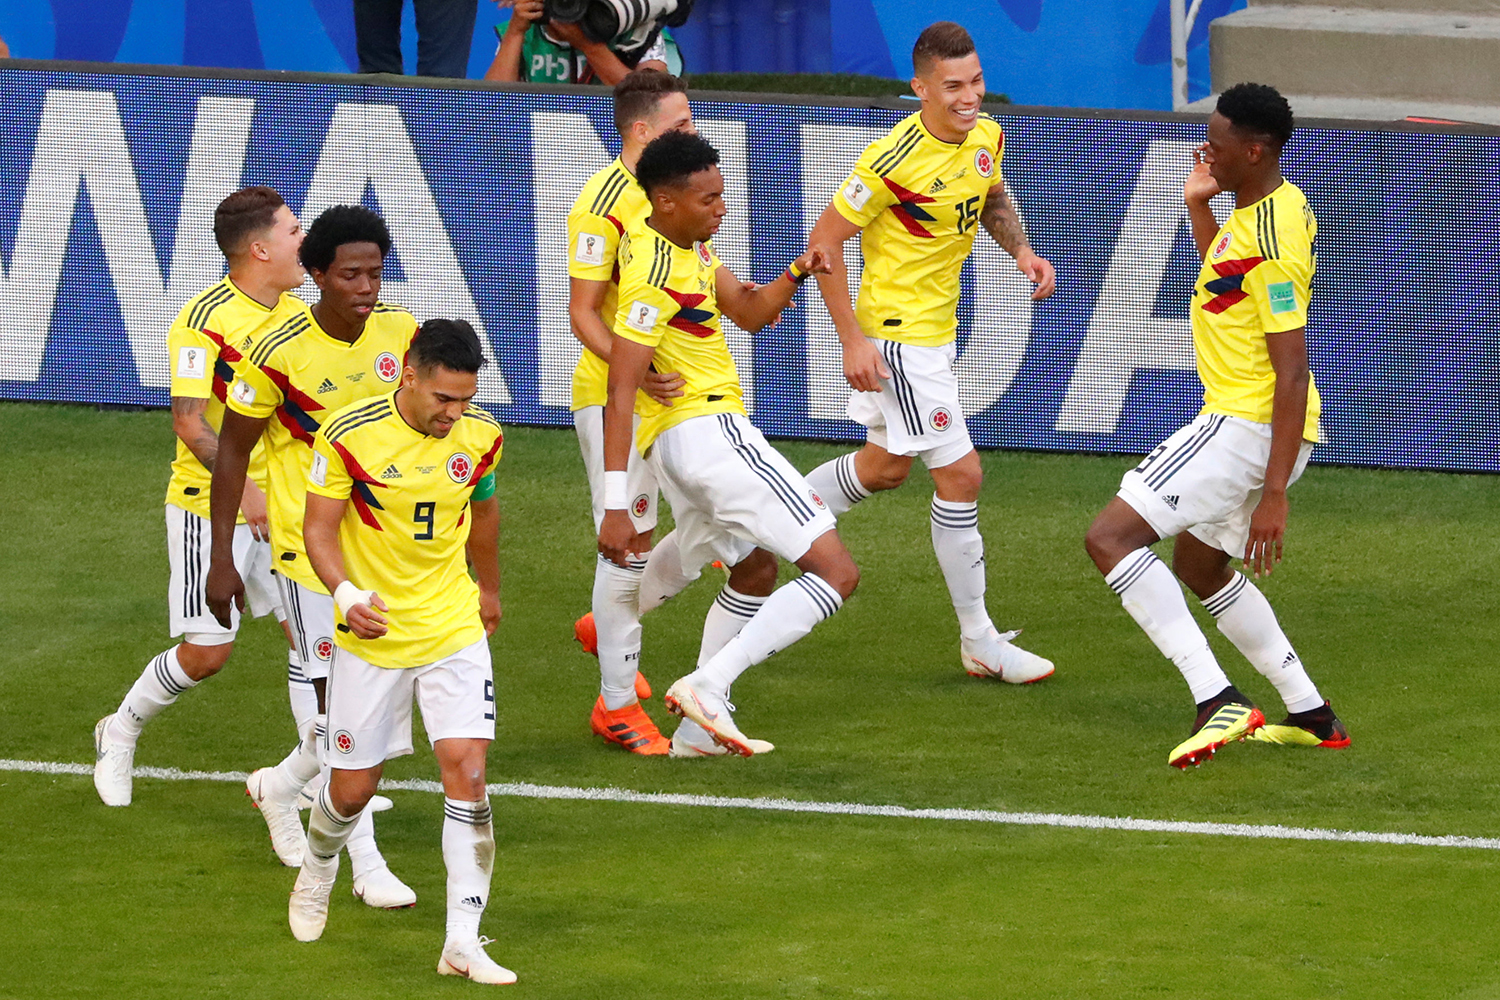 Saiba como assistir a Colômbia x Inglaterra pela Copa do Mundo 2018